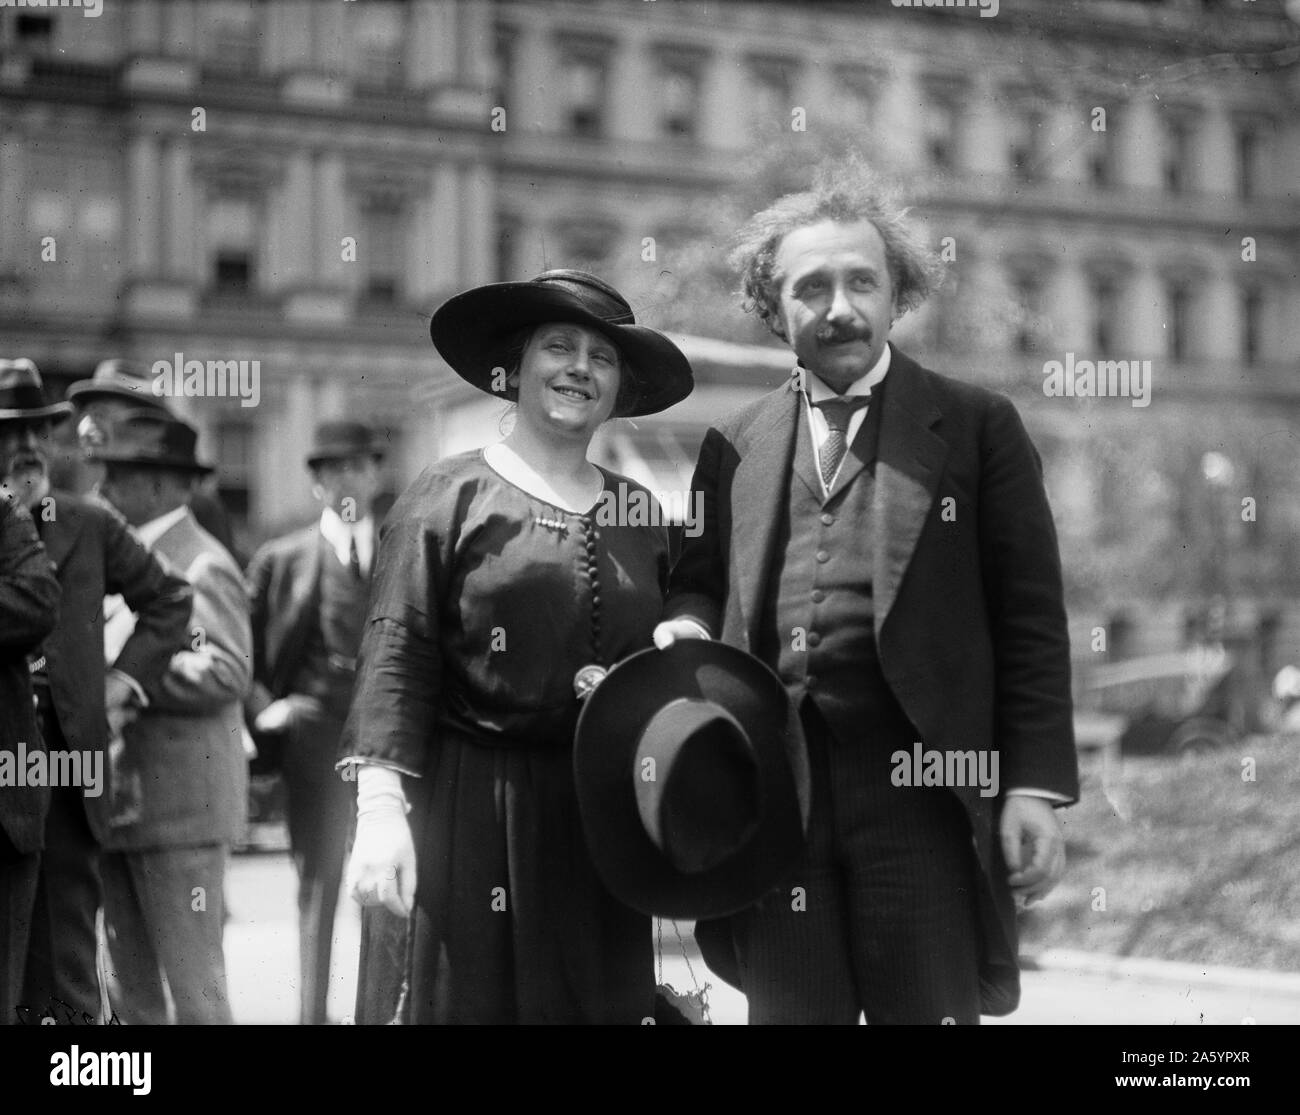 Albert Einstein mit seiner Frau Elsa, Staat, Krieg und Marine Gebäude im Hintergrund, Washington DC. Fotograf-Harris und Ewing. 1921 und 1923. Stockfoto